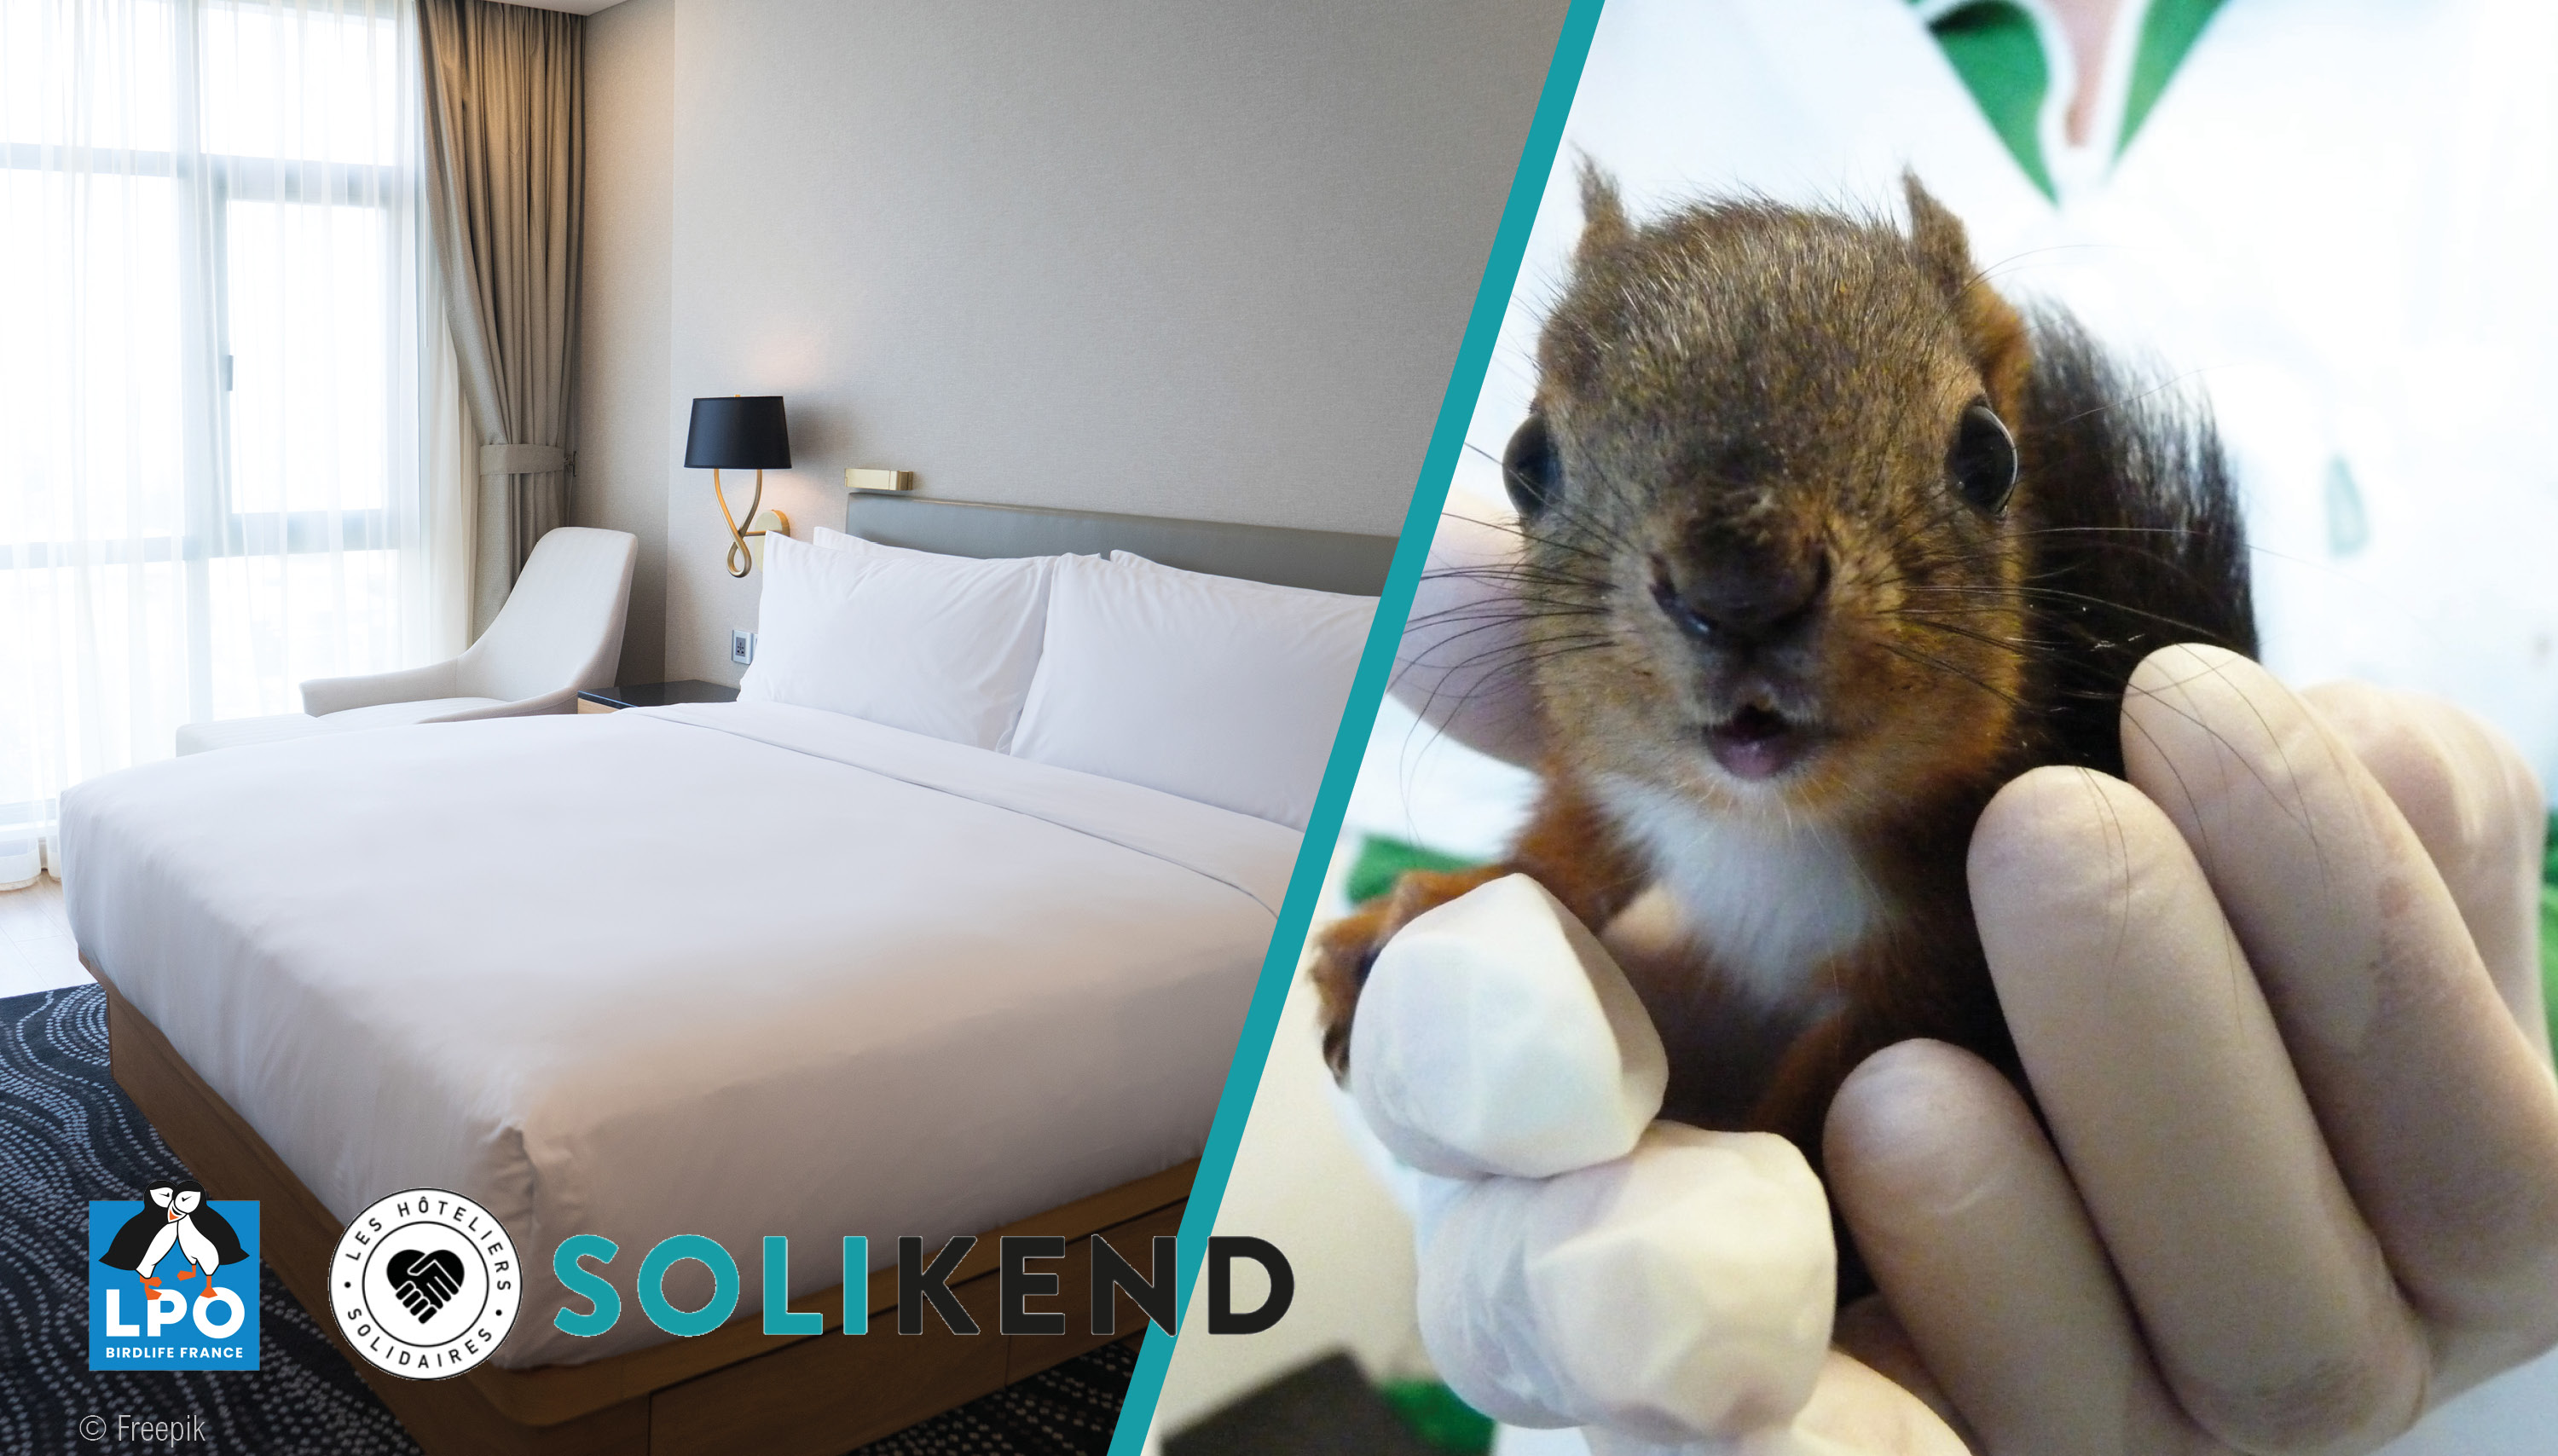 visuel représentant sur la gauche : une chambre d'hôtel, sur la droite : un écureuil roux en centre de soins